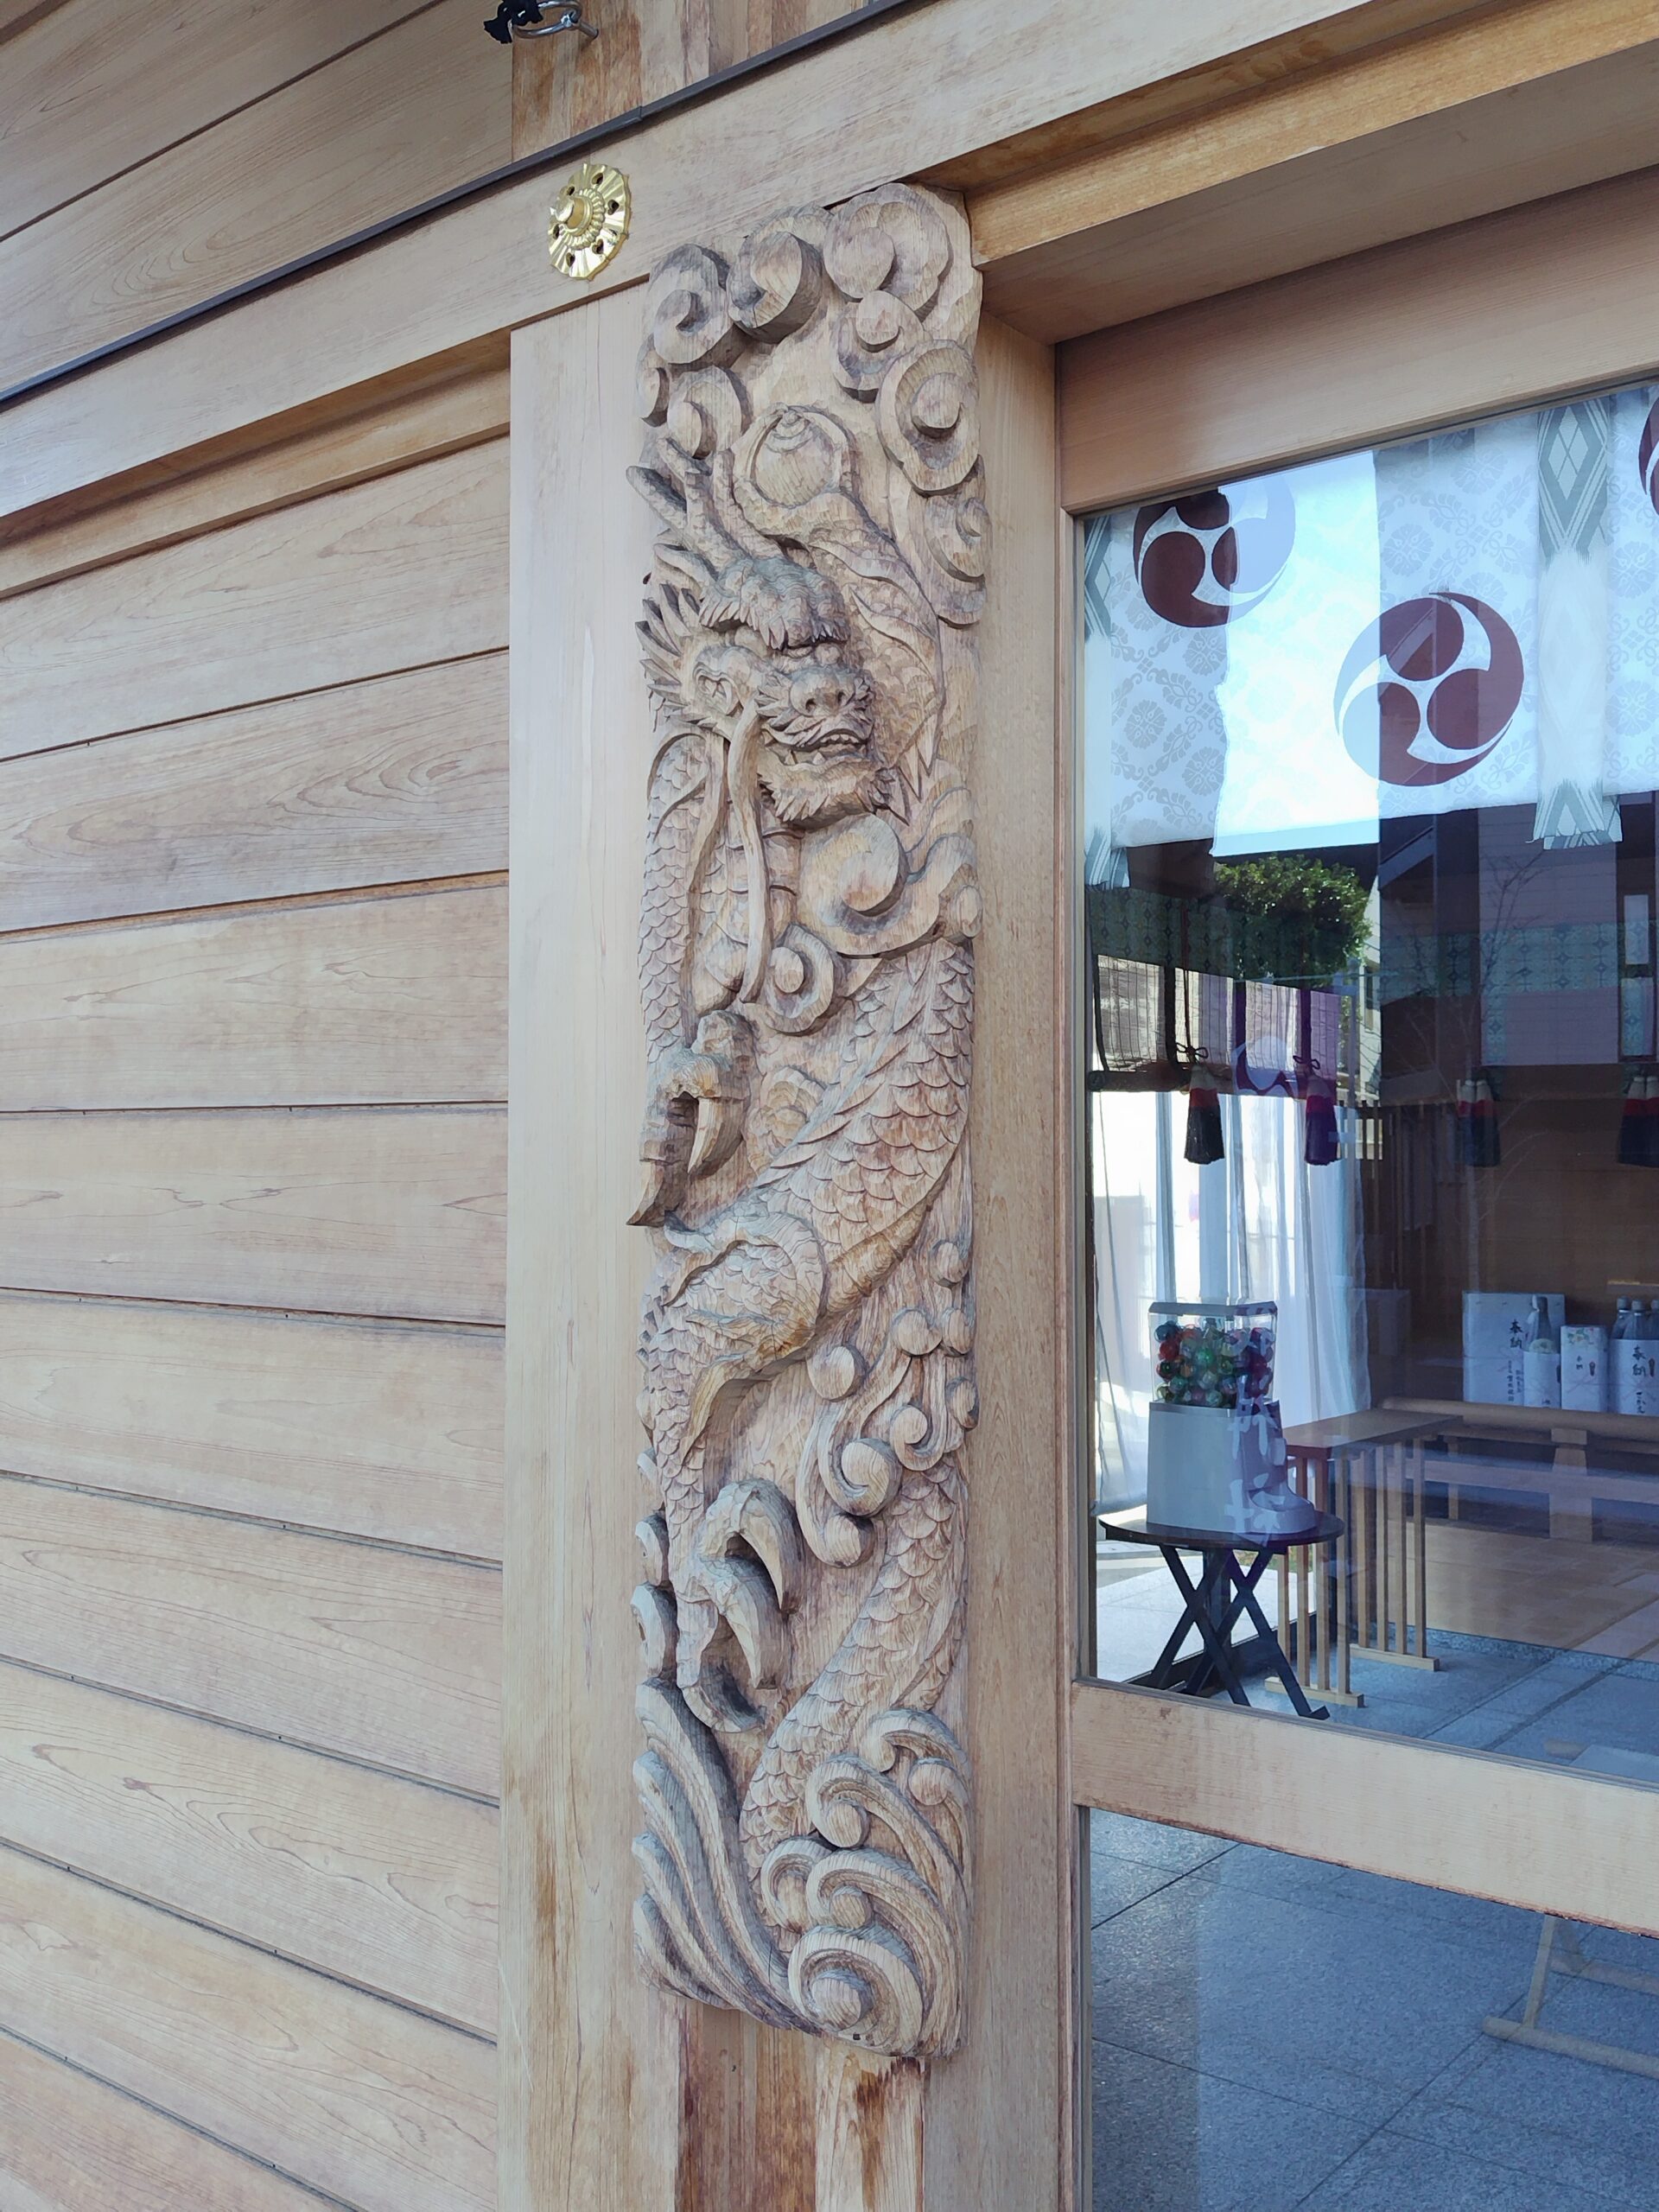 駒込妙義神社の社殿の龍の彫刻